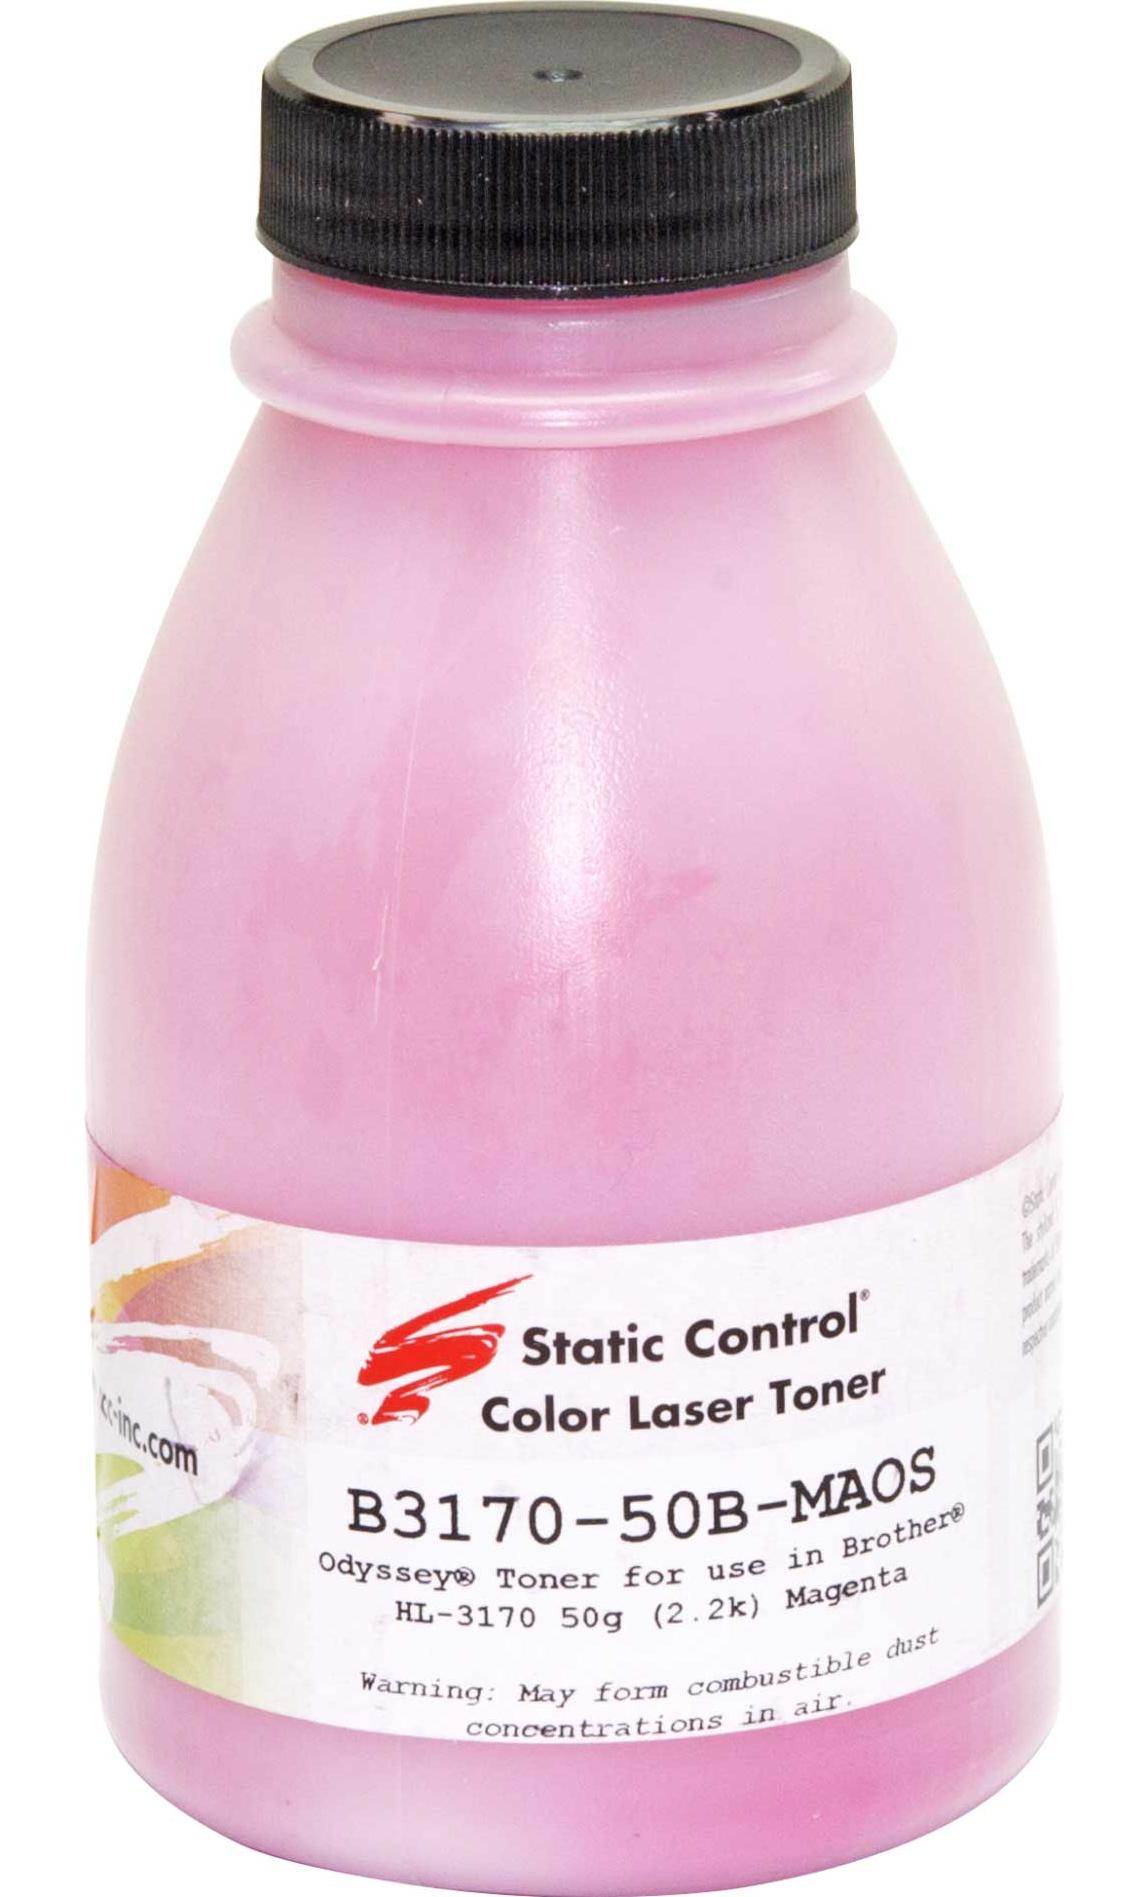 Тонер Static Control B3170-50B-MAOS пурпурный флакон 50гр. для принтера Brother HL-3170